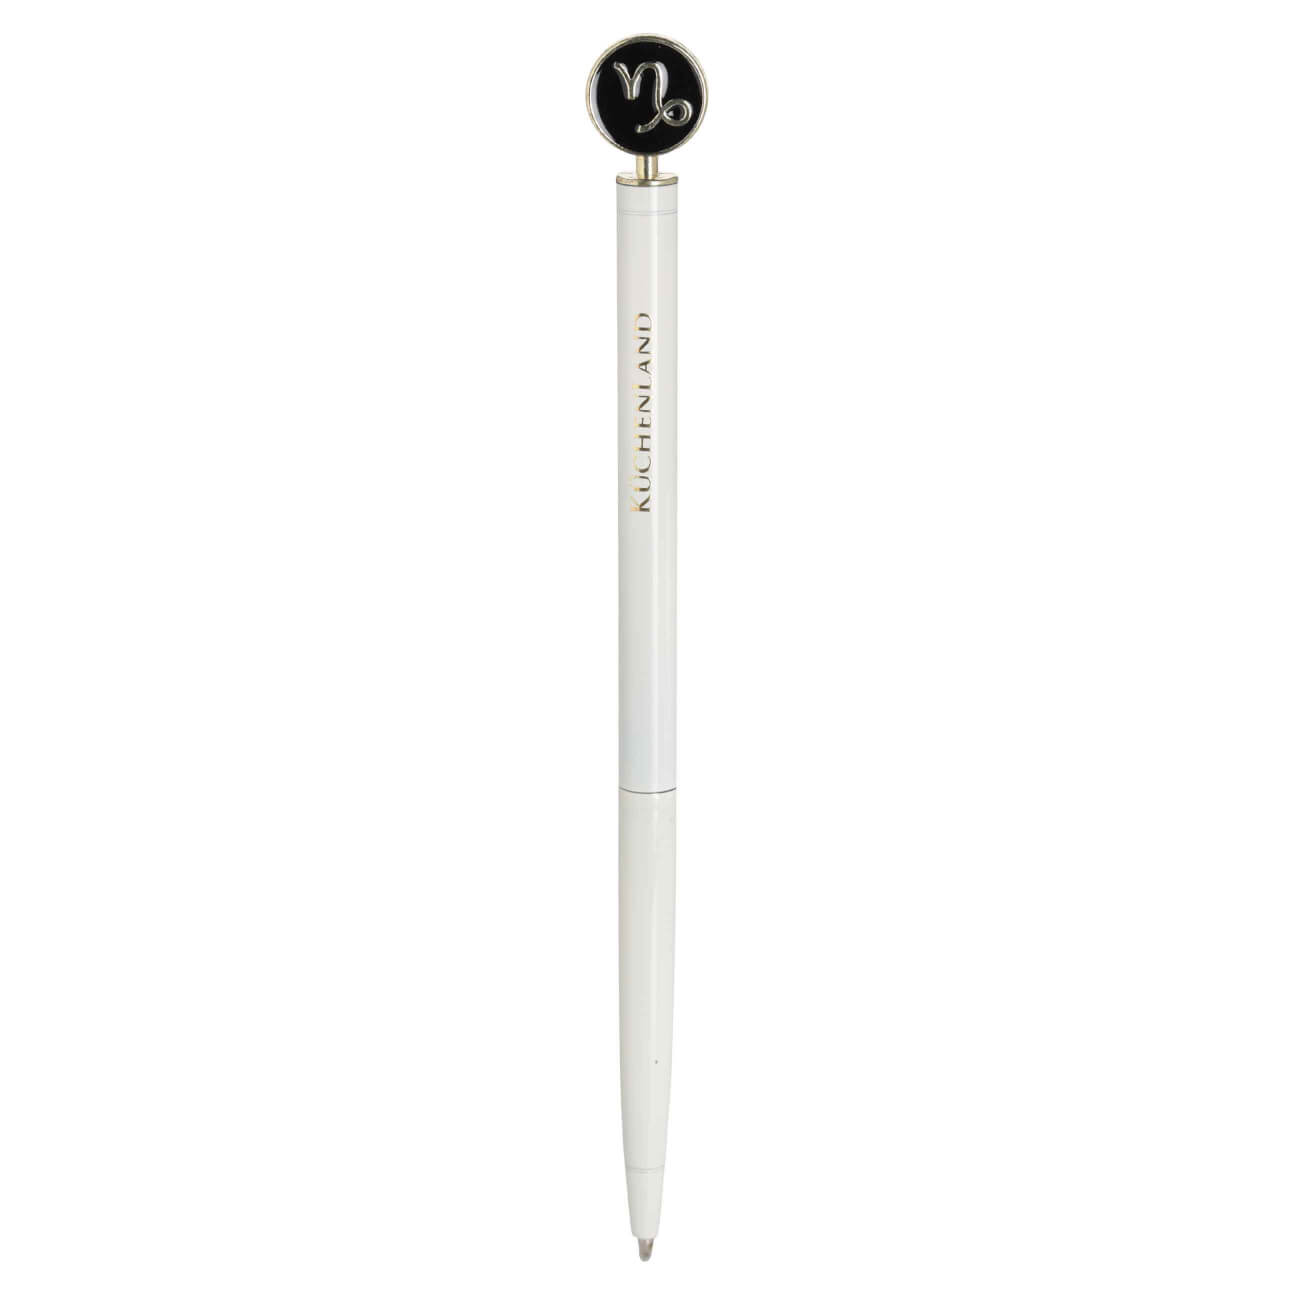 Ручка шариковая, 15 см, с фигуркой, сталь, молочно-золотистая, Козерог, Zodiac ручка doorlock